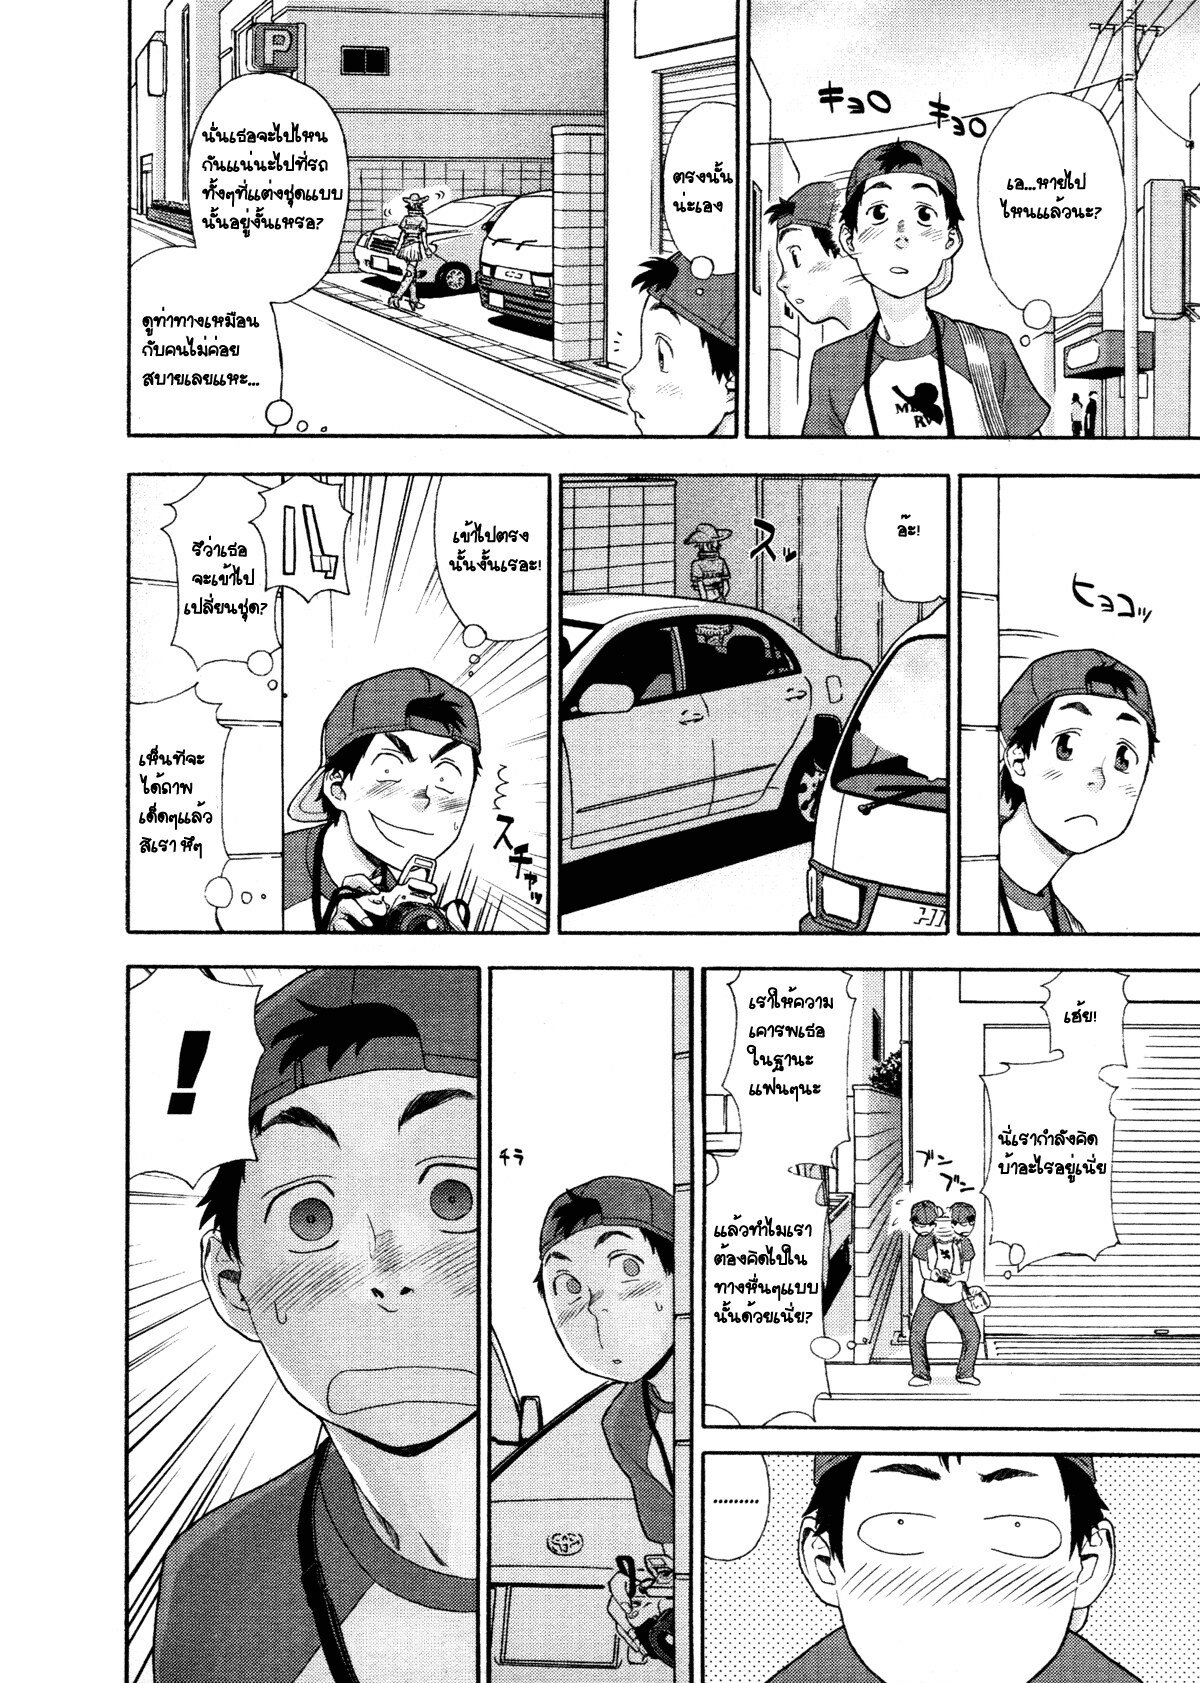 [Yamatogawa] COW GIRL =Aqua Bless chapter3= [Thai] page 4 full